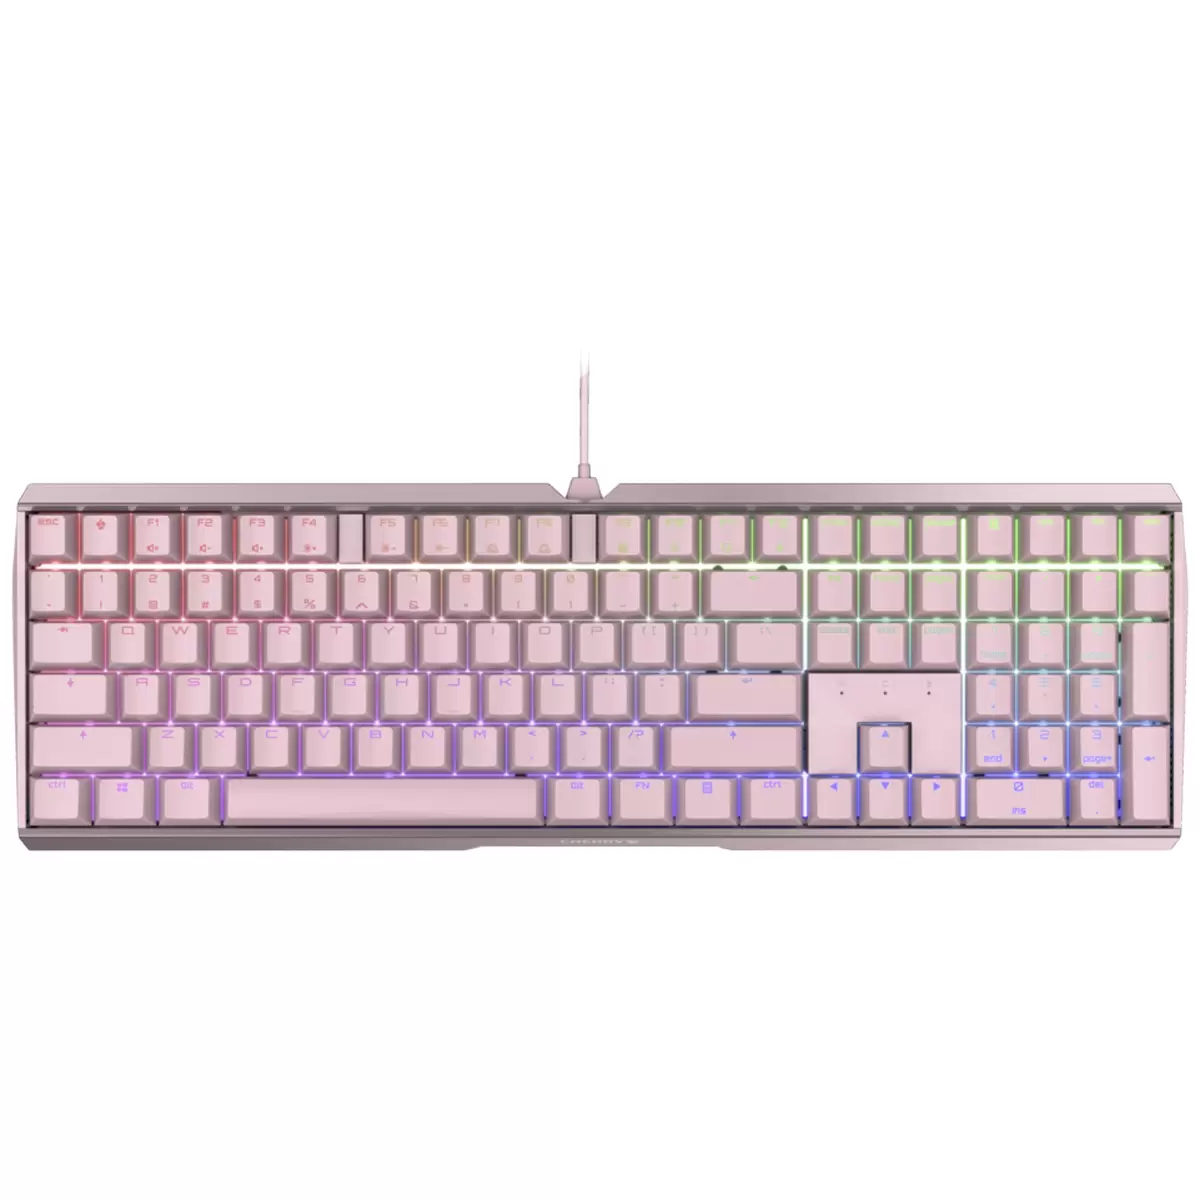 CHERRY MX 3.0S RGB Gaming Keyboard (Pink)  G80-3874HWAEU-9